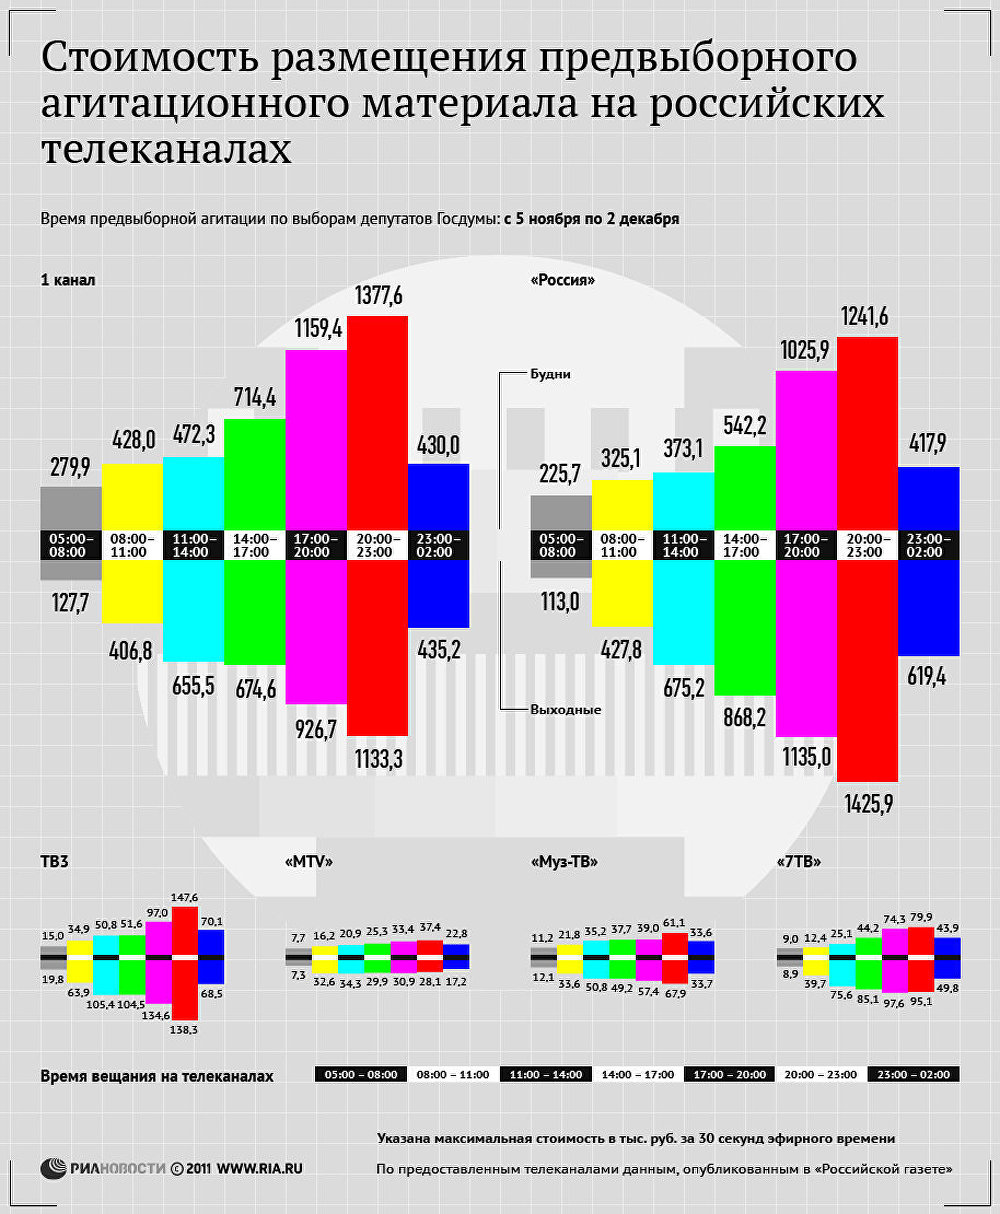 Стоимость размещения предвыборного агитационного материала на российских телеканалах